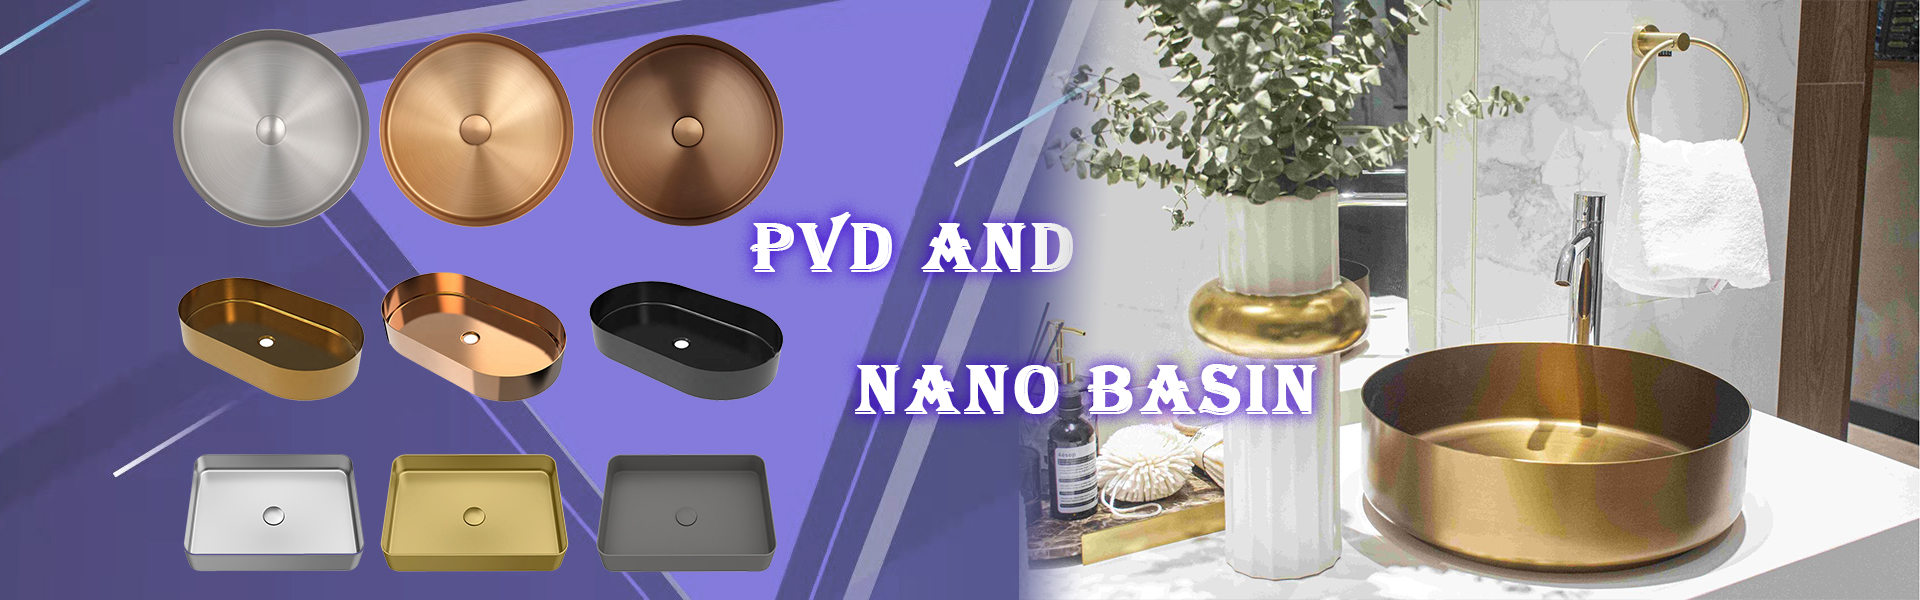 pvd and nano basin